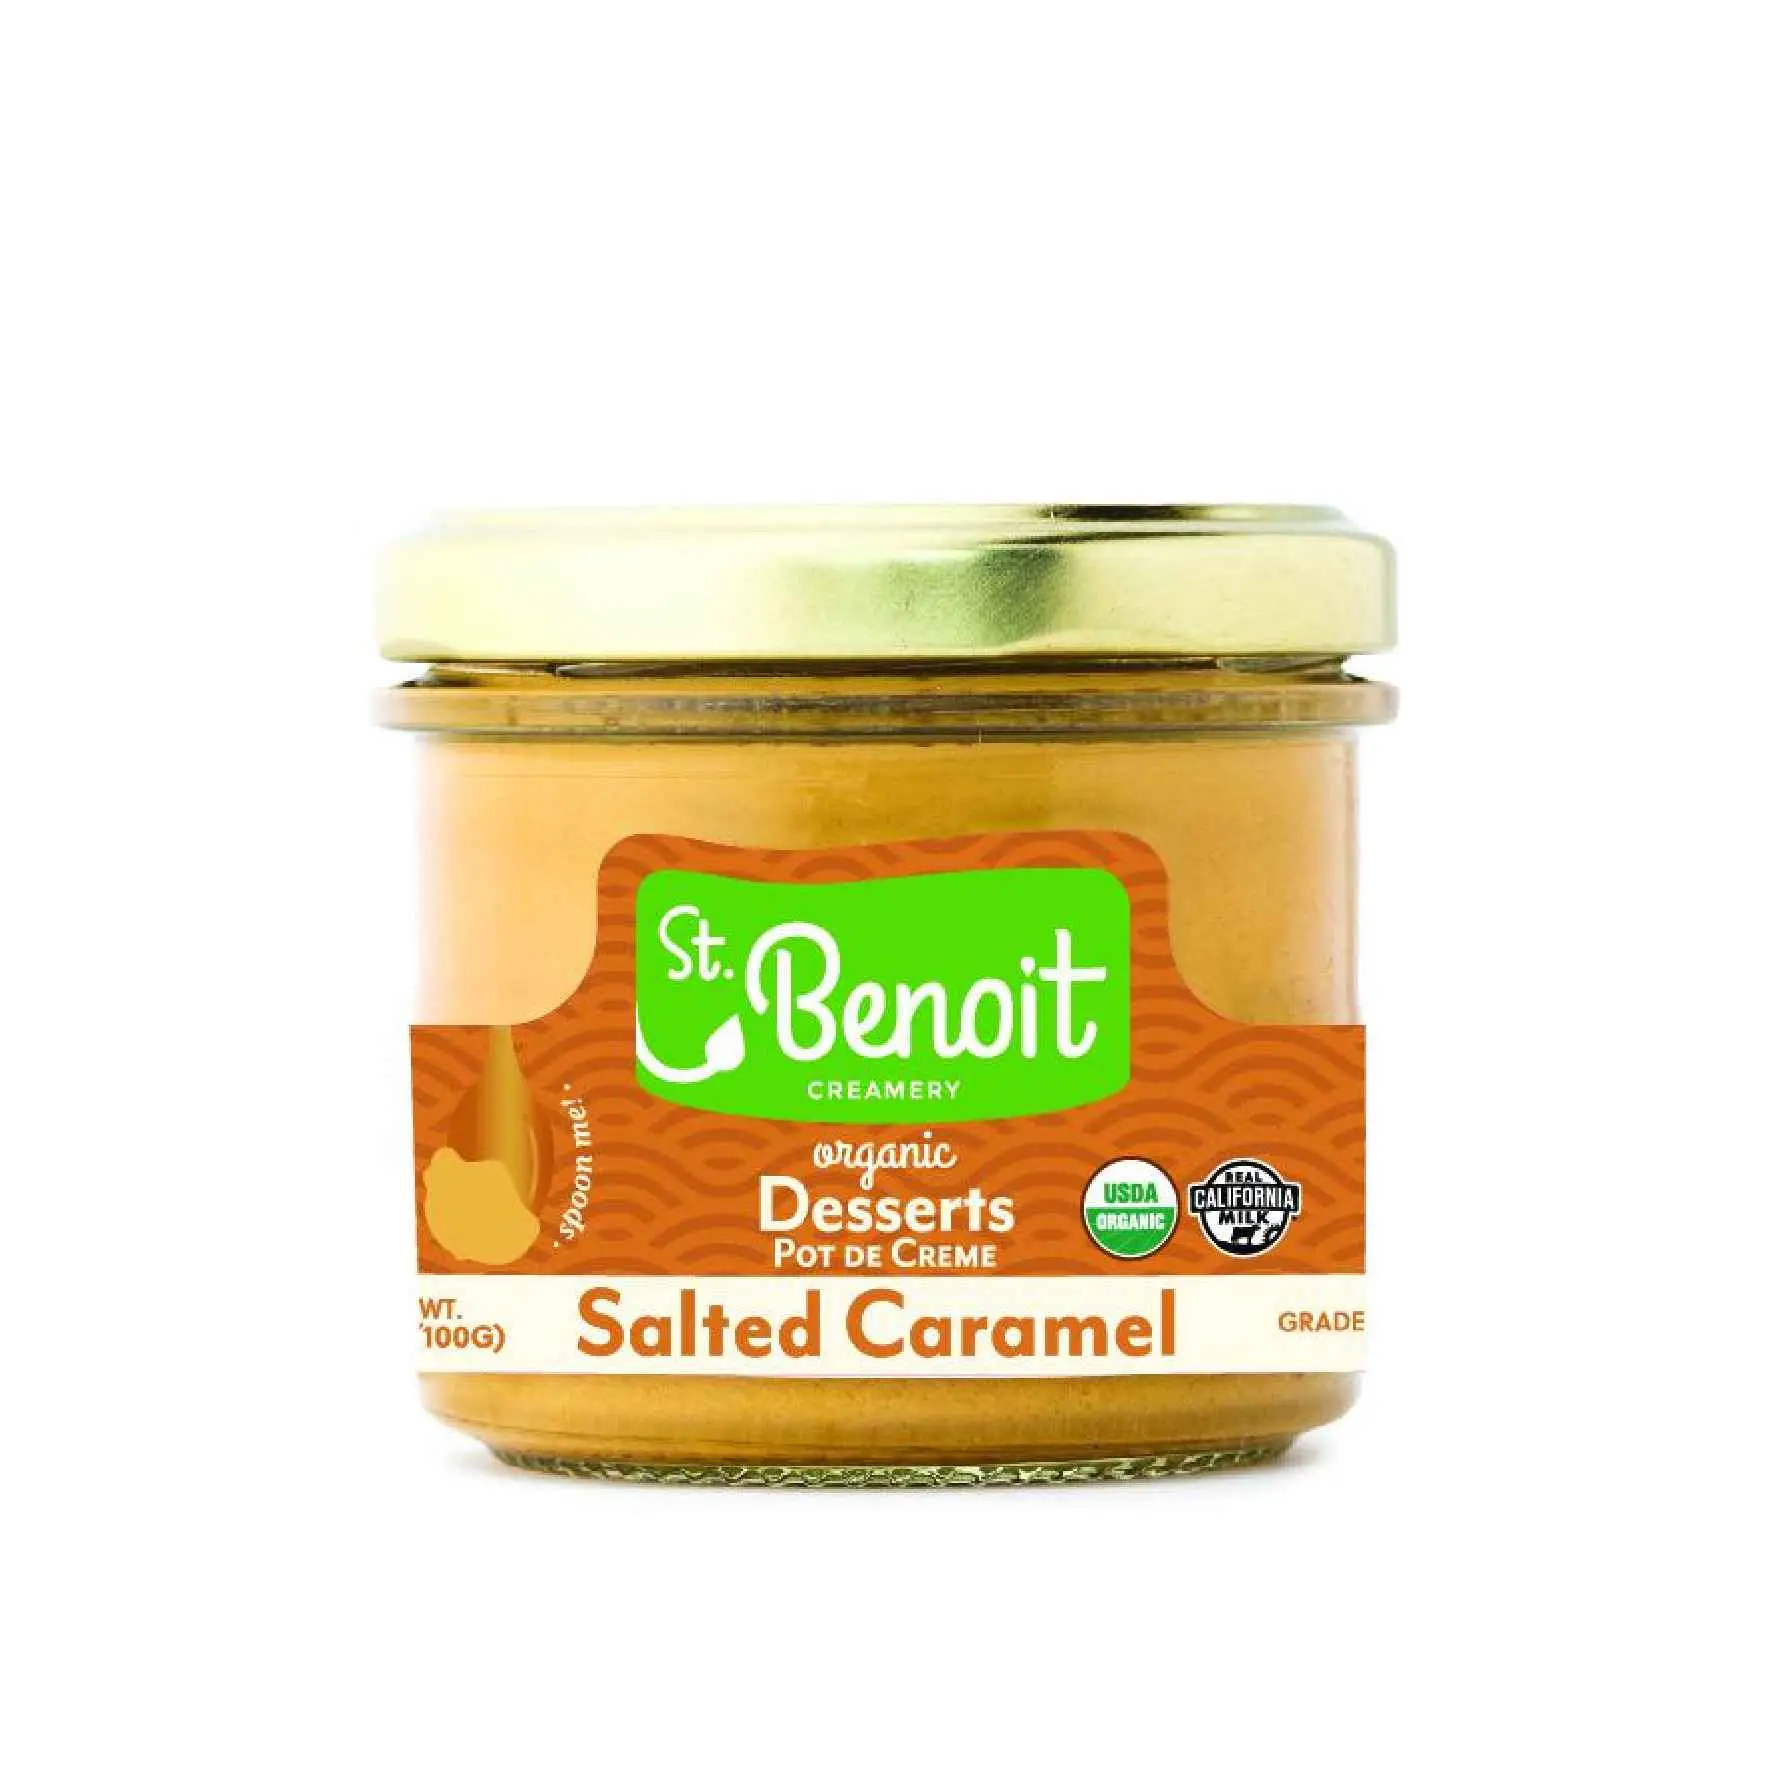 Saint Benoit Pot De Crème Salted Caramel Delivery